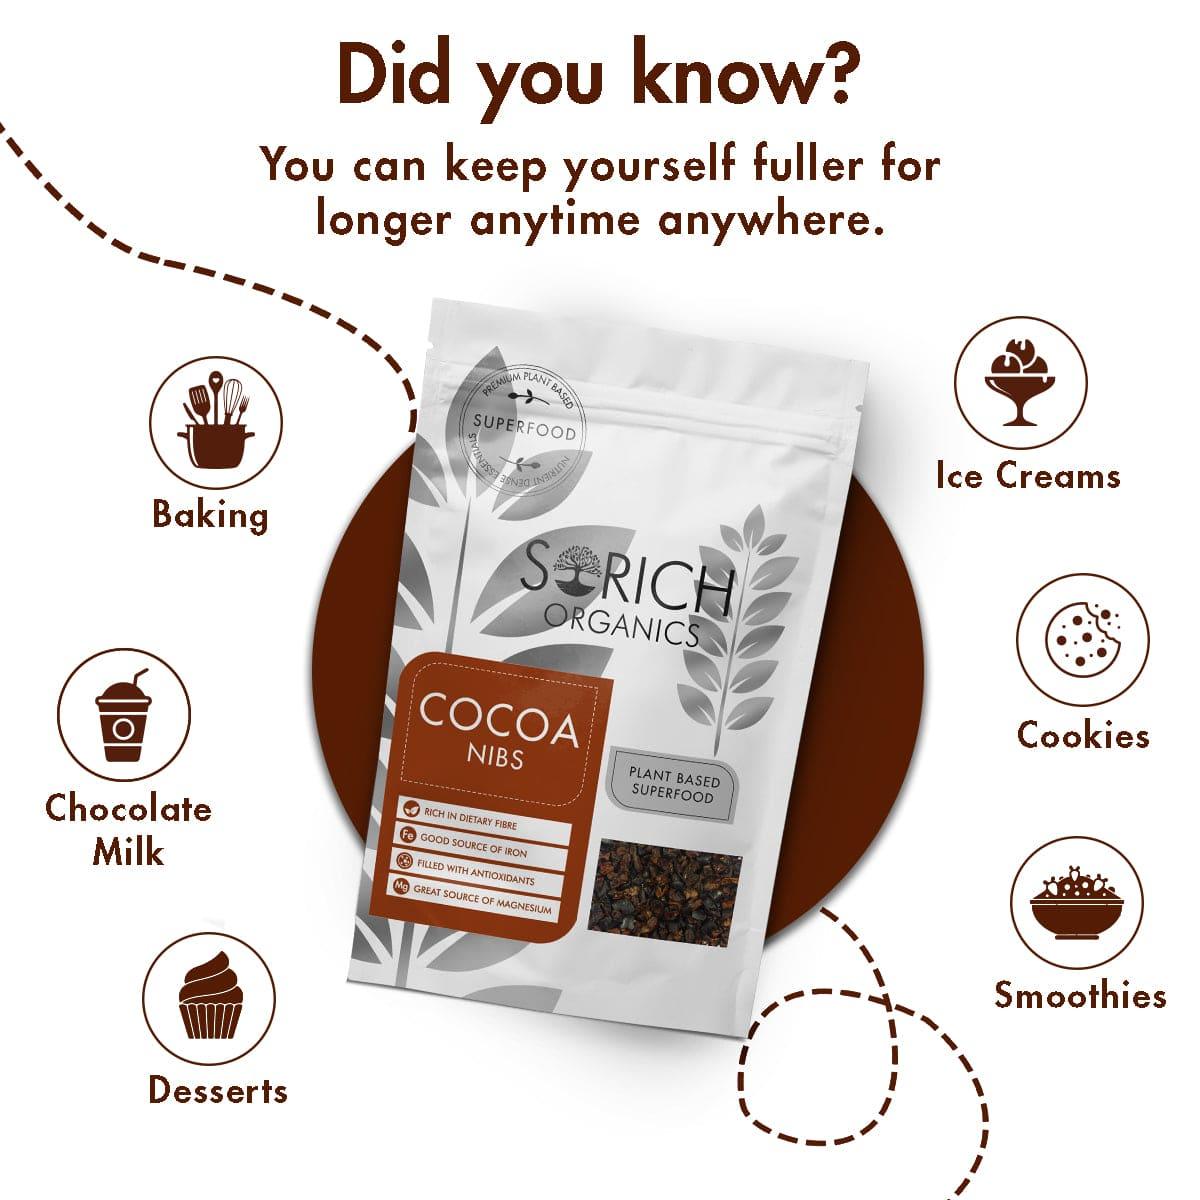 Cocoa Nibs - Sorich